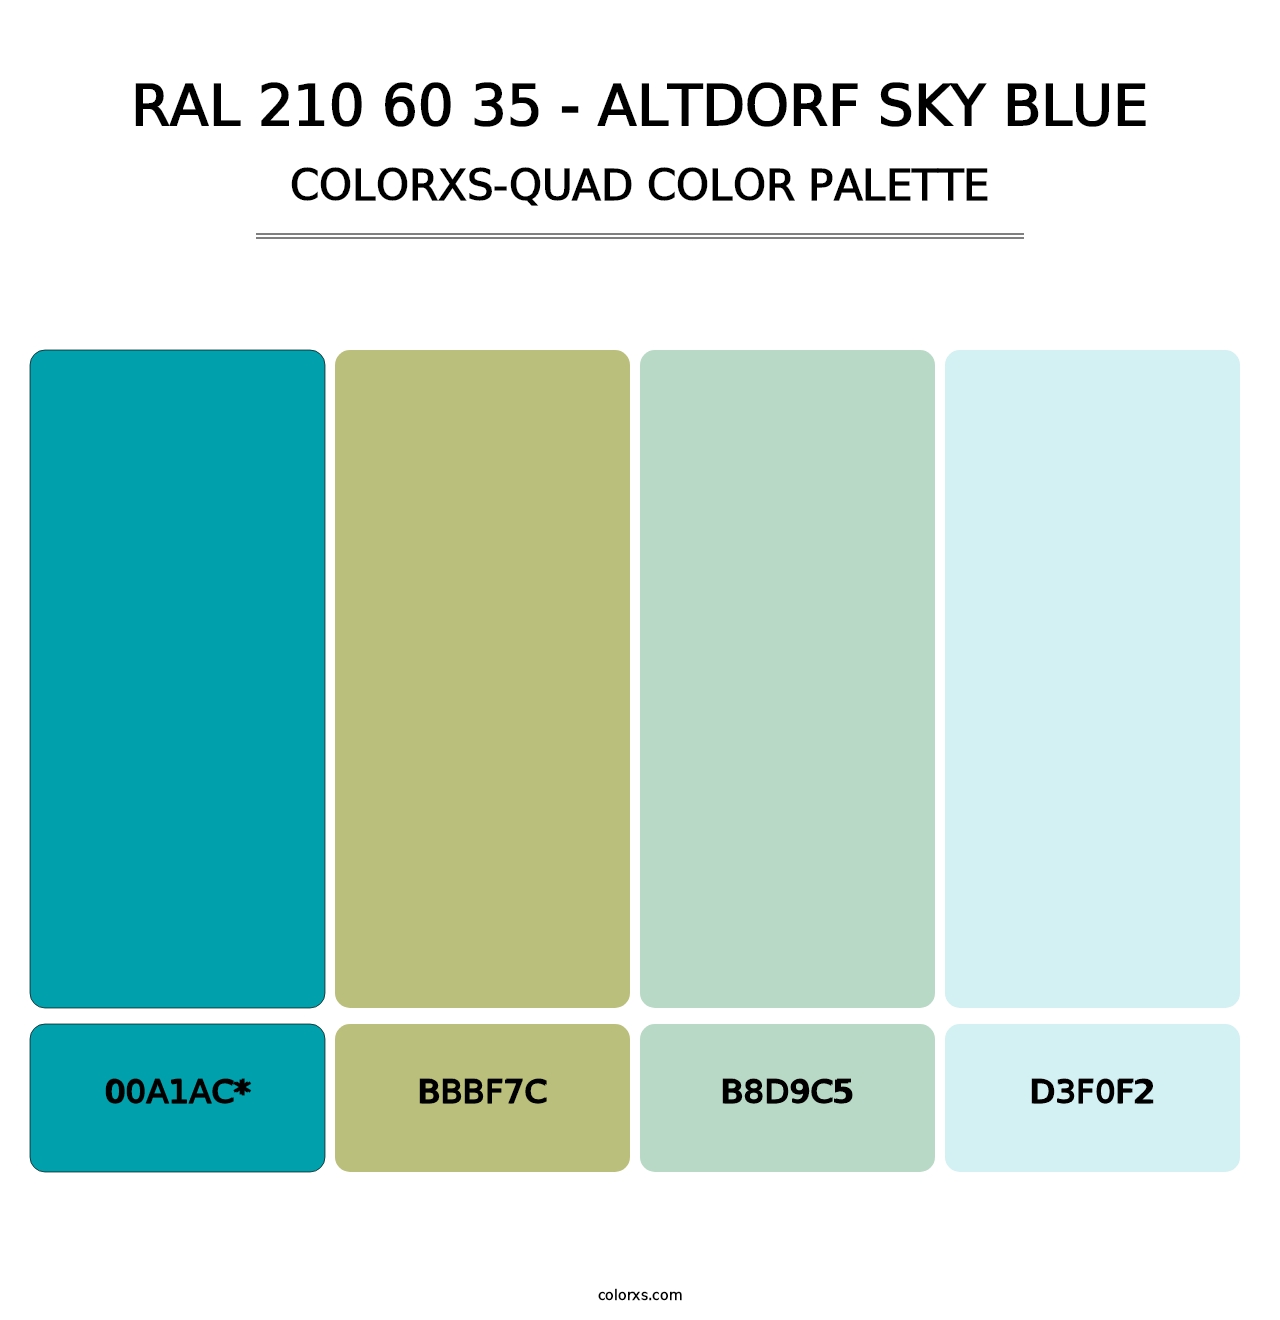 RAL 210 60 35 - Altdorf Sky Blue - Colorxs Quad Palette